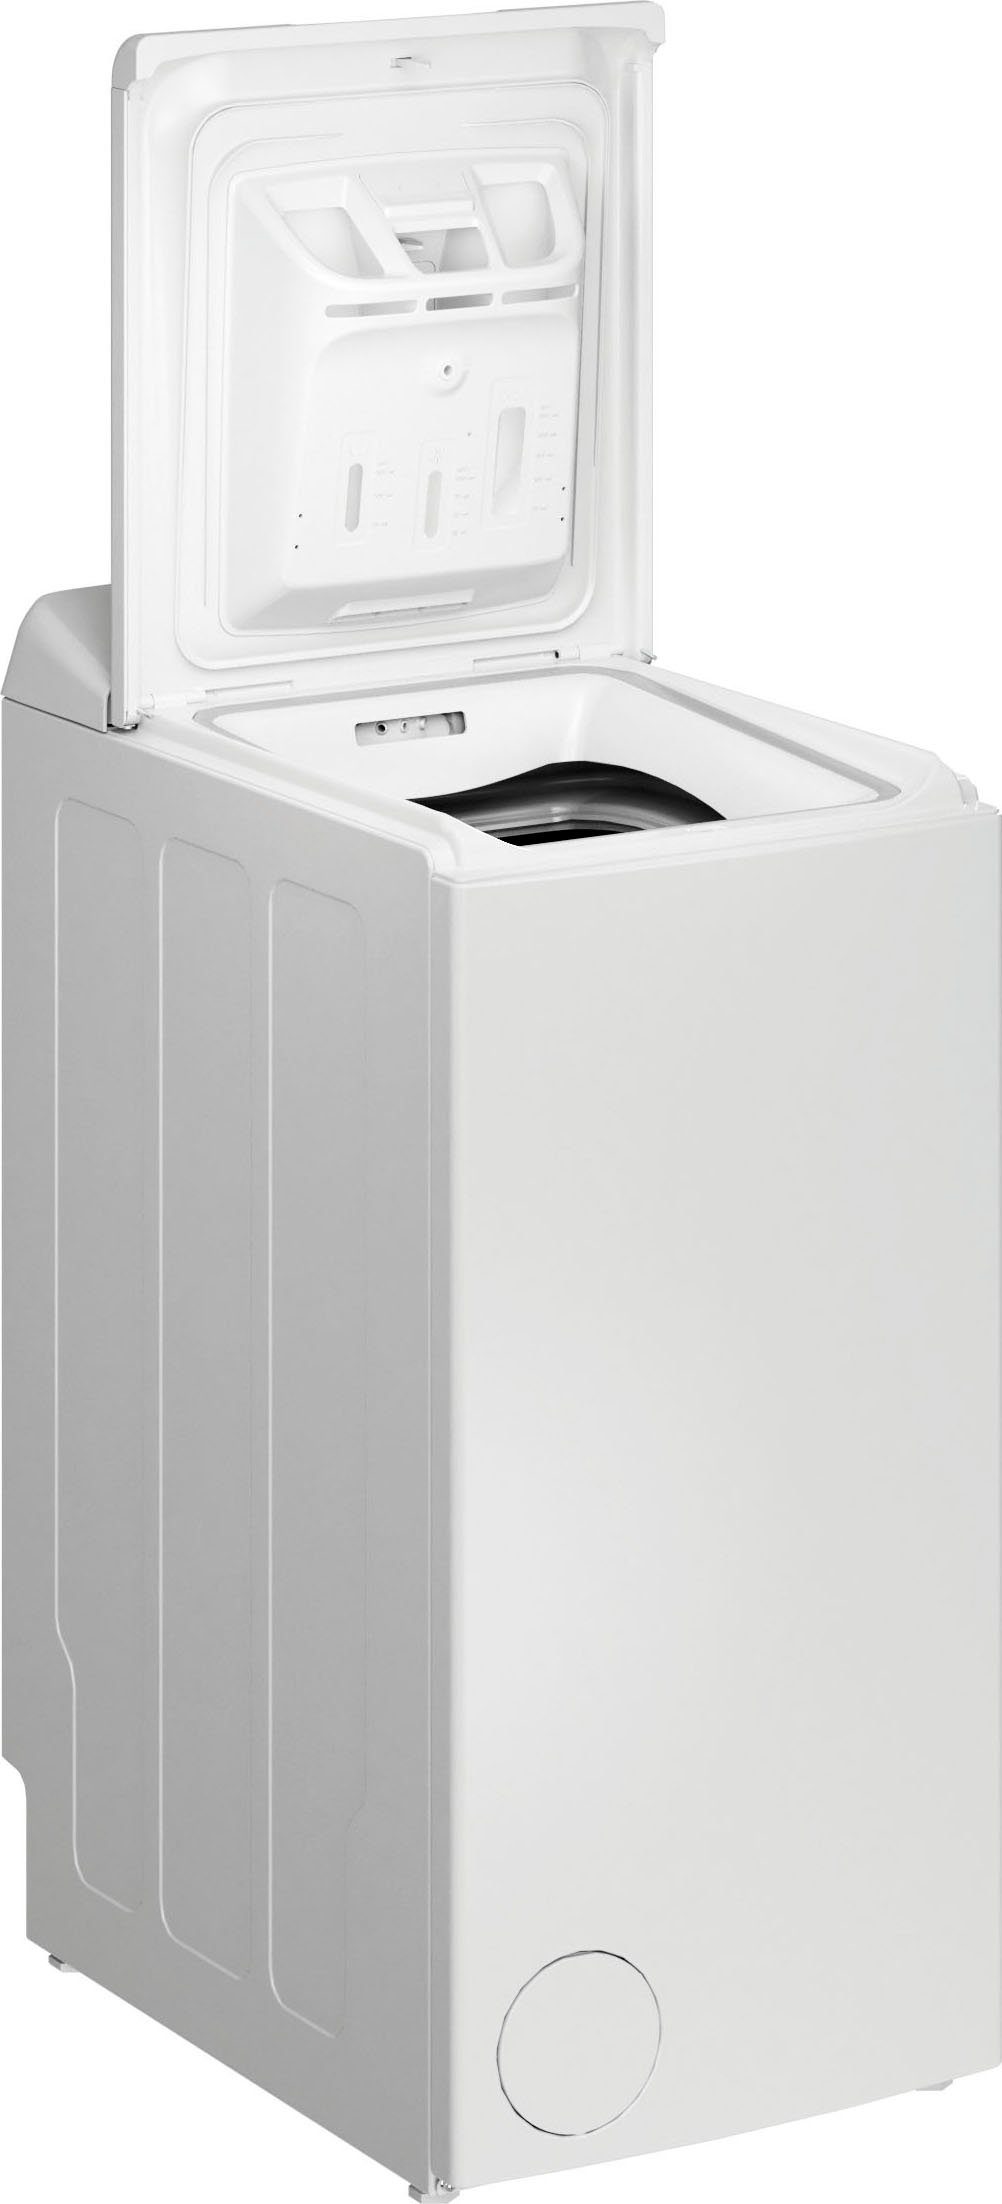 Privileg Waschmaschine 1100 5,5 U/min PWT Toplader kg, DE, LD55